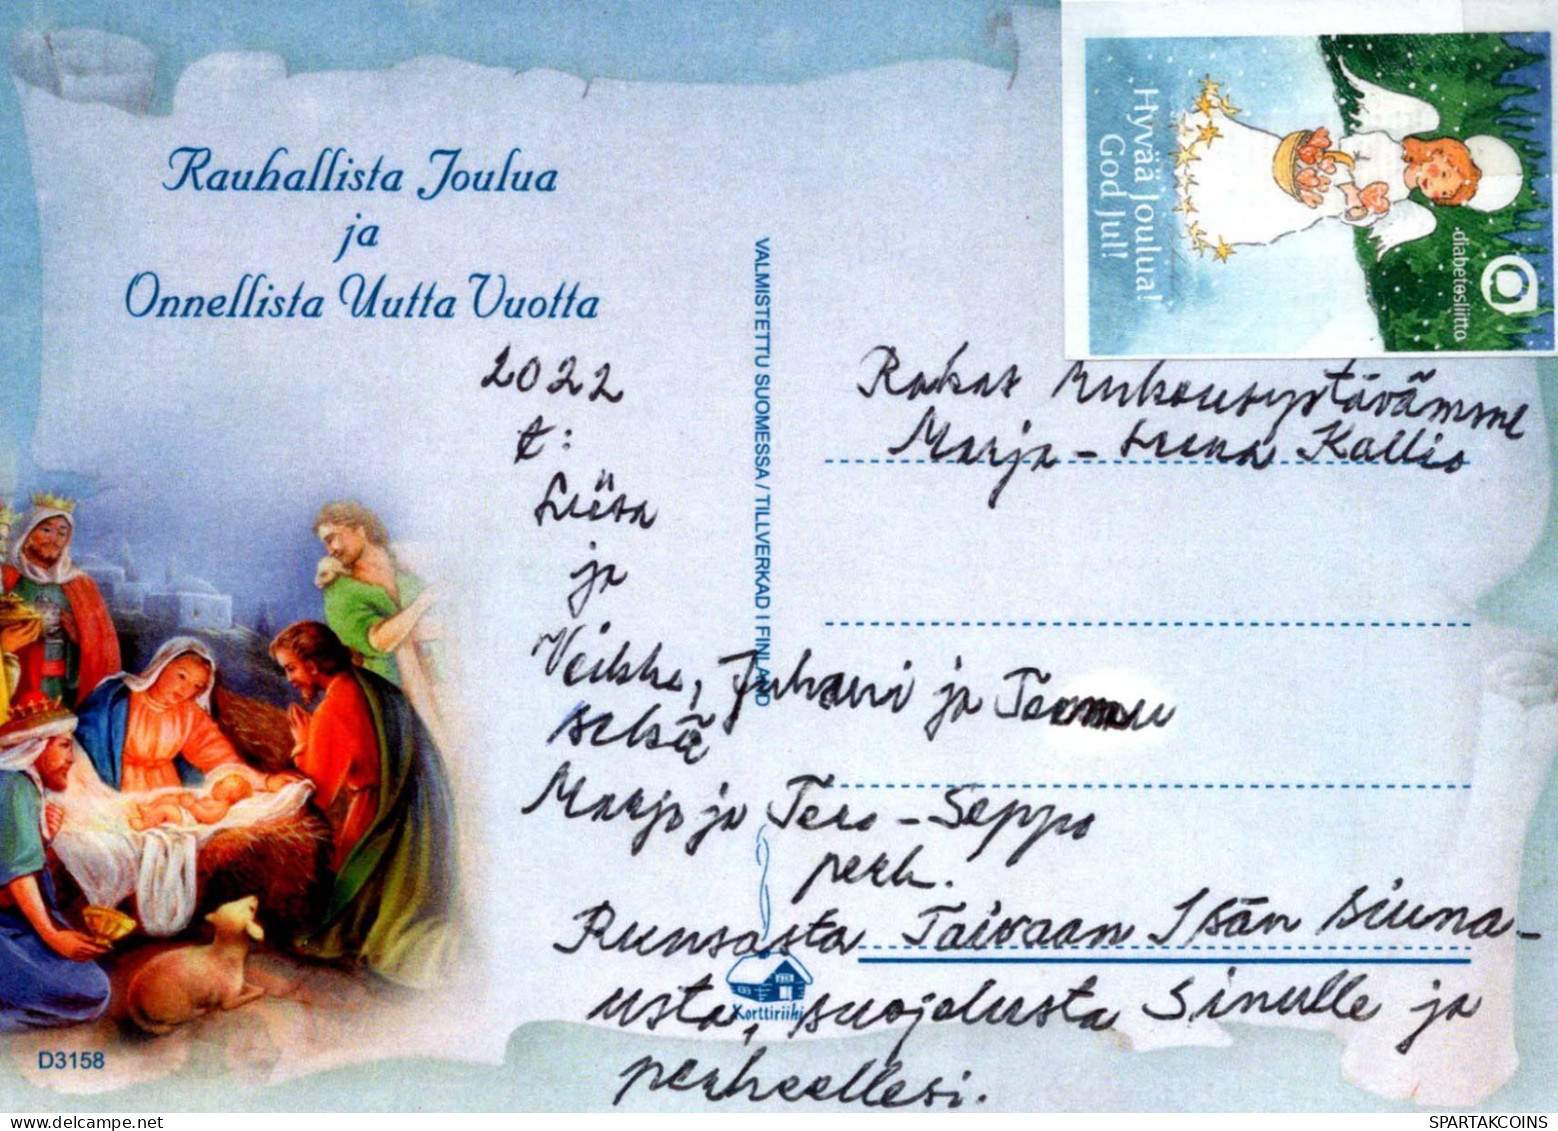 Virgen María Virgen Niño JESÚS Navidad Religión Vintage Tarjeta Postal CPSM #PBB998.A - Jungfräuliche Marie Und Madona